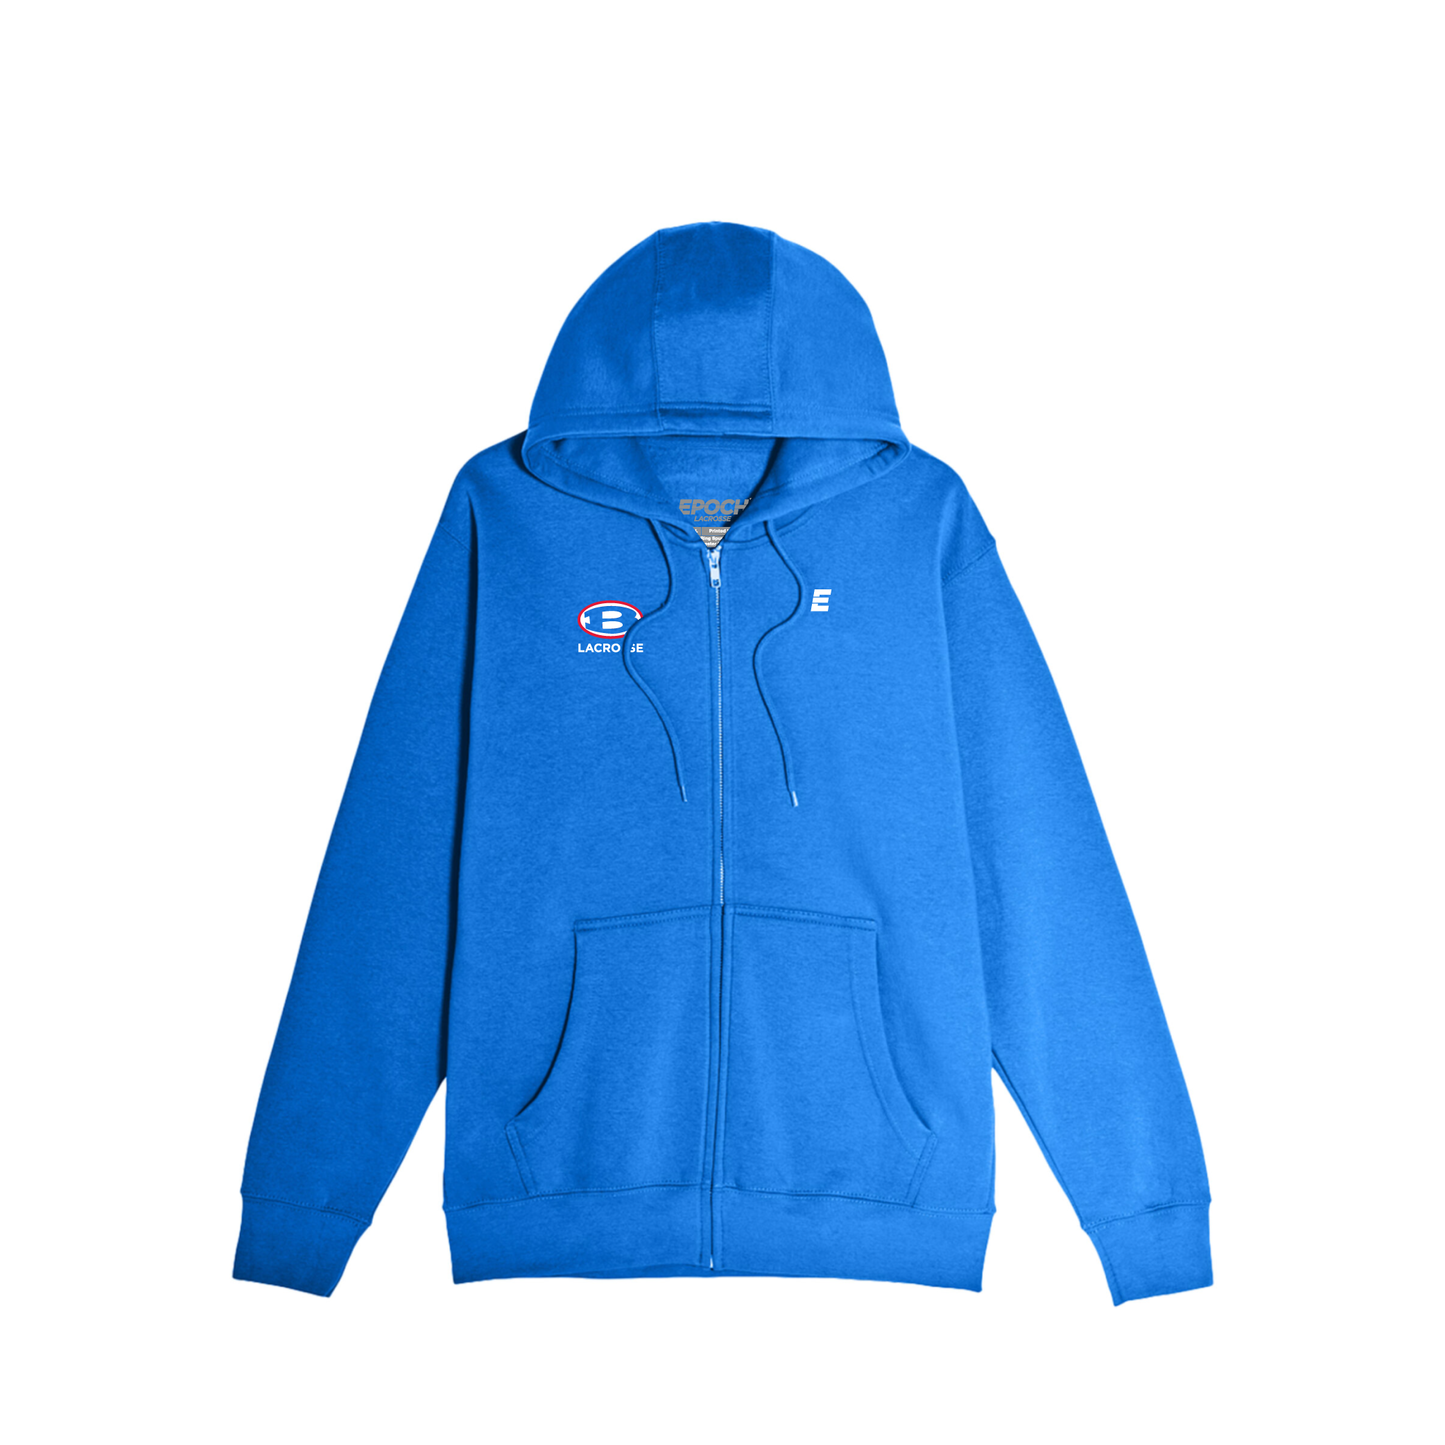 Bellport Lacrosse - Unisex Hooded Zip Sweatshirt